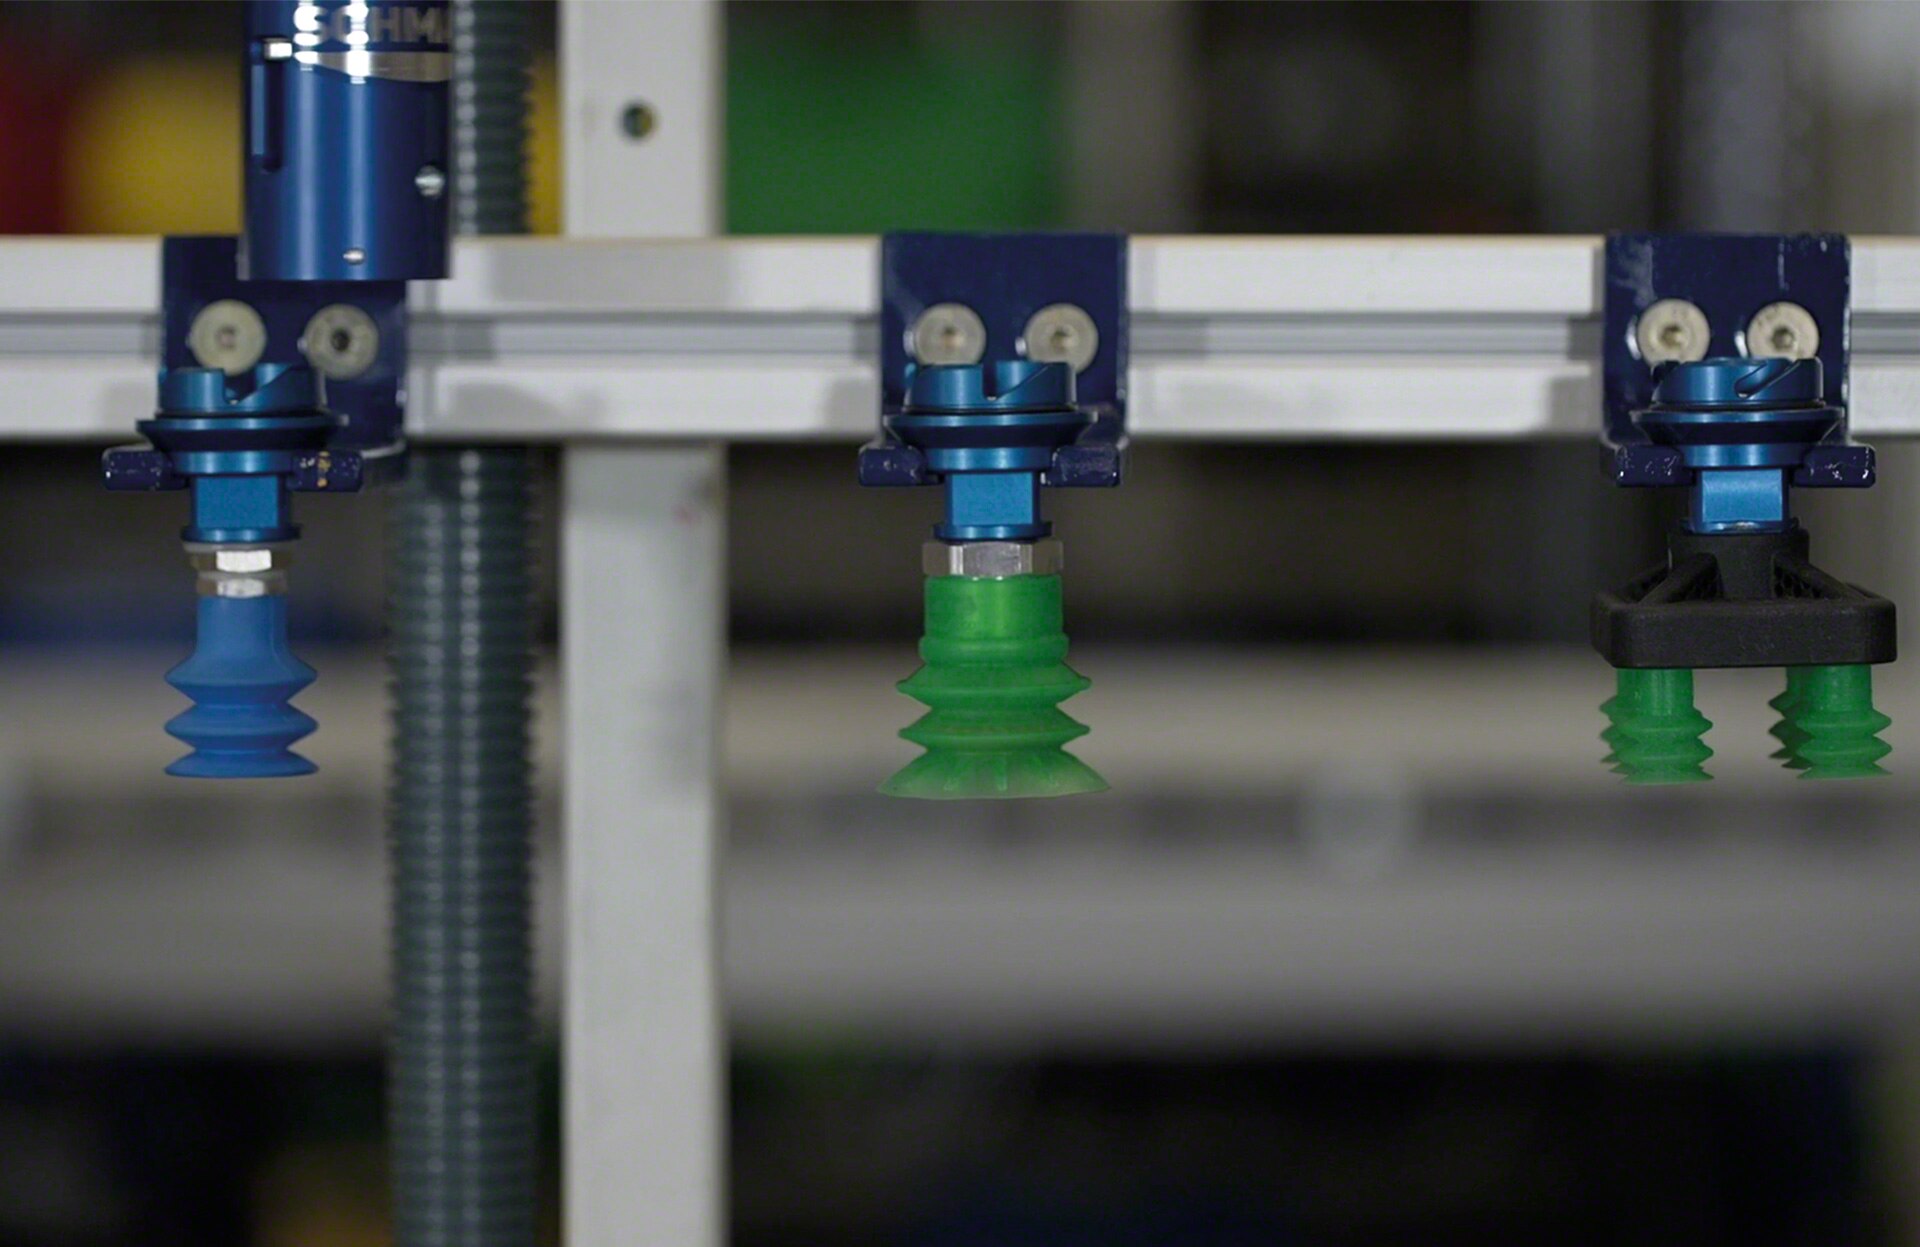 Der Roboter kann die Vakuumgreifer wechseln, um die Greifvorrichtung an die Eigenschaften des zu handhabenden Gegenstandes anzupassen